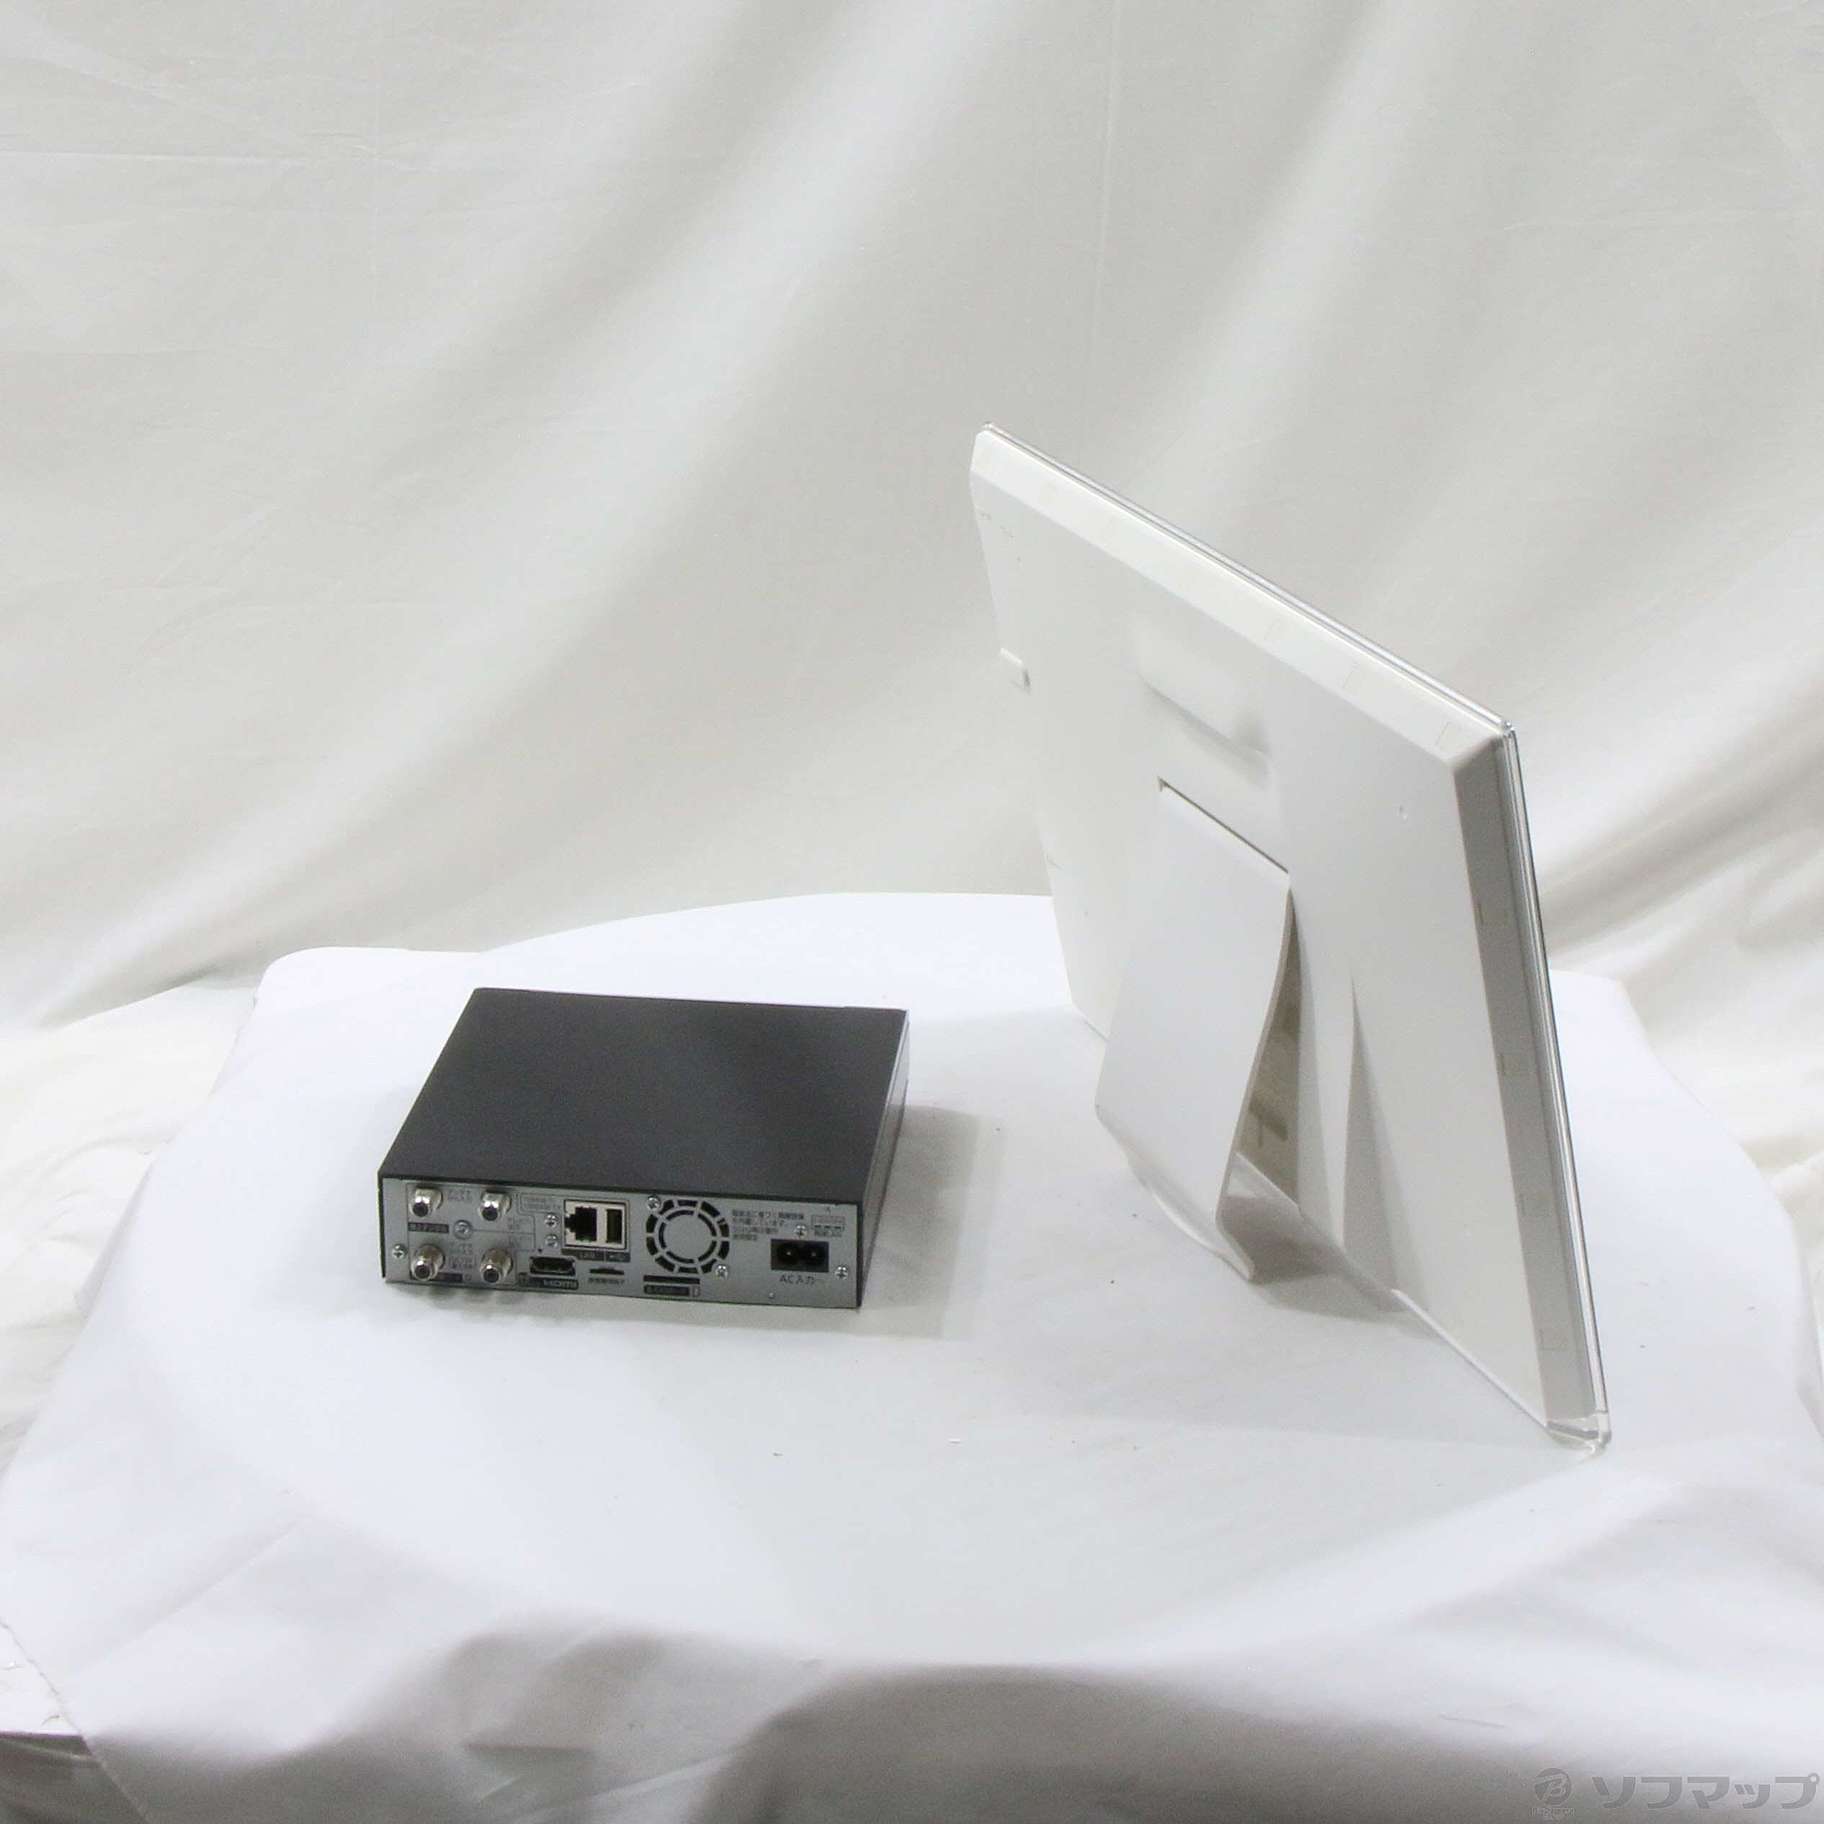 〔中古品〕 500GB内蔵HDDレコーダー付15V型防水ネットワークディスプレイ プライベートビエラUN-JL15T3-K(USBHDD録画対応)